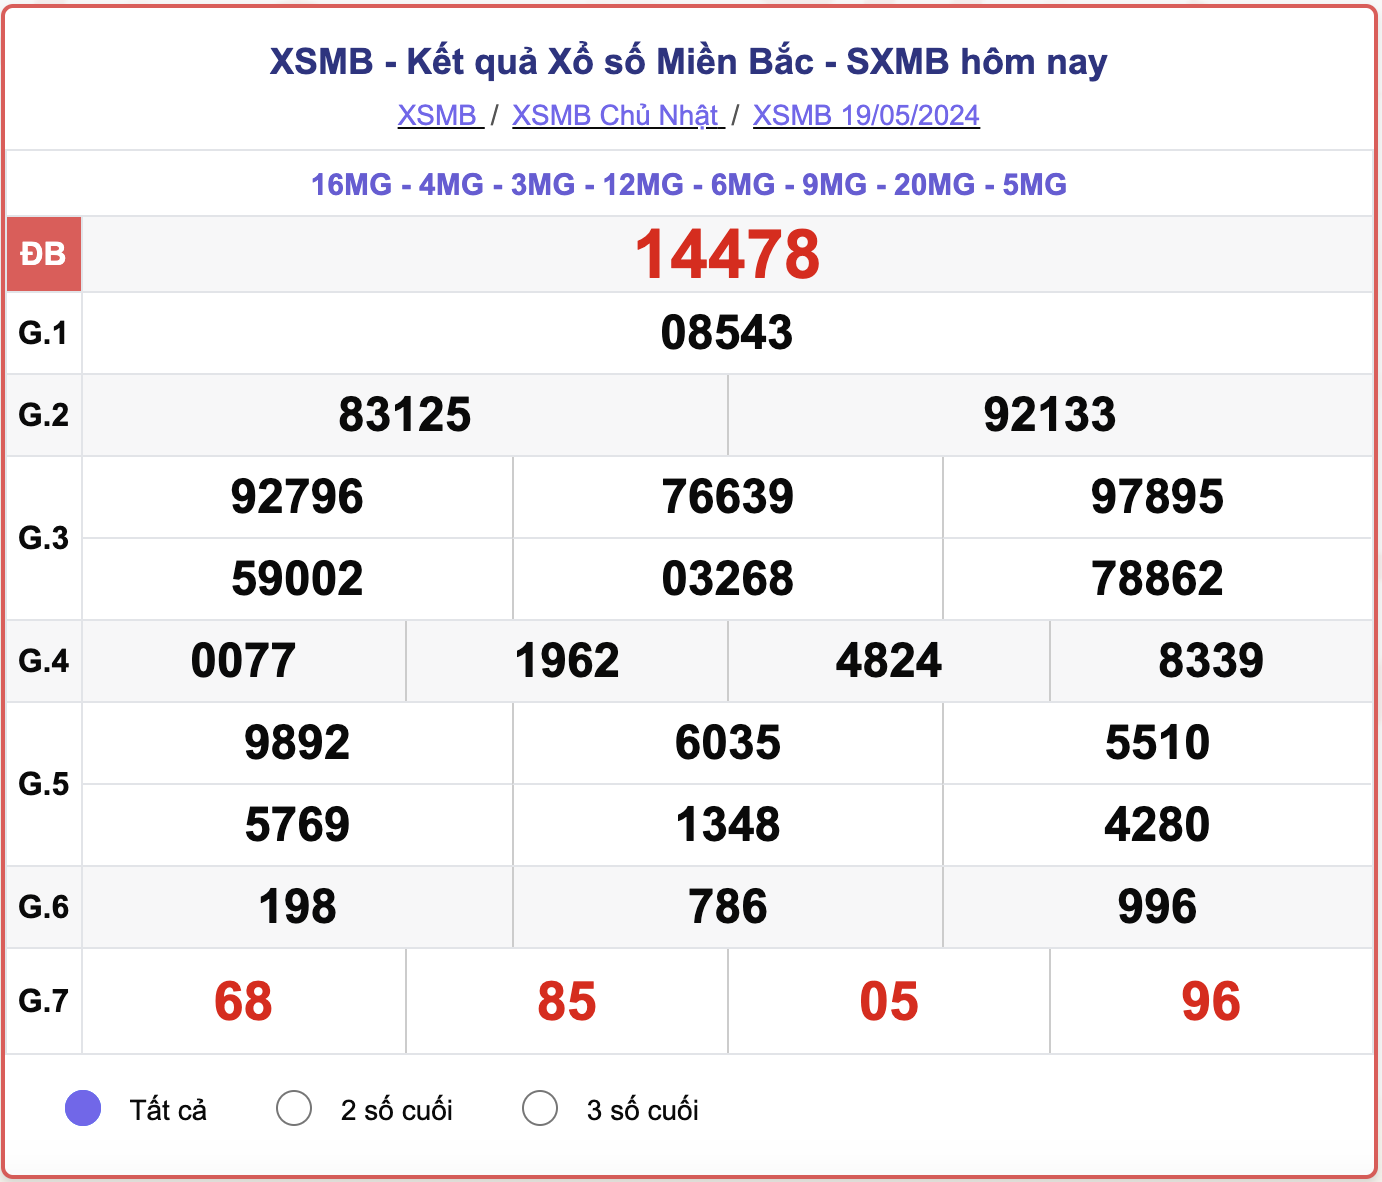 XSMB 23/5 - Kết quả xổ số miền Bắc hôm nay 23/5/2024 - KQXSMB ngày 23/5- Ảnh 5.